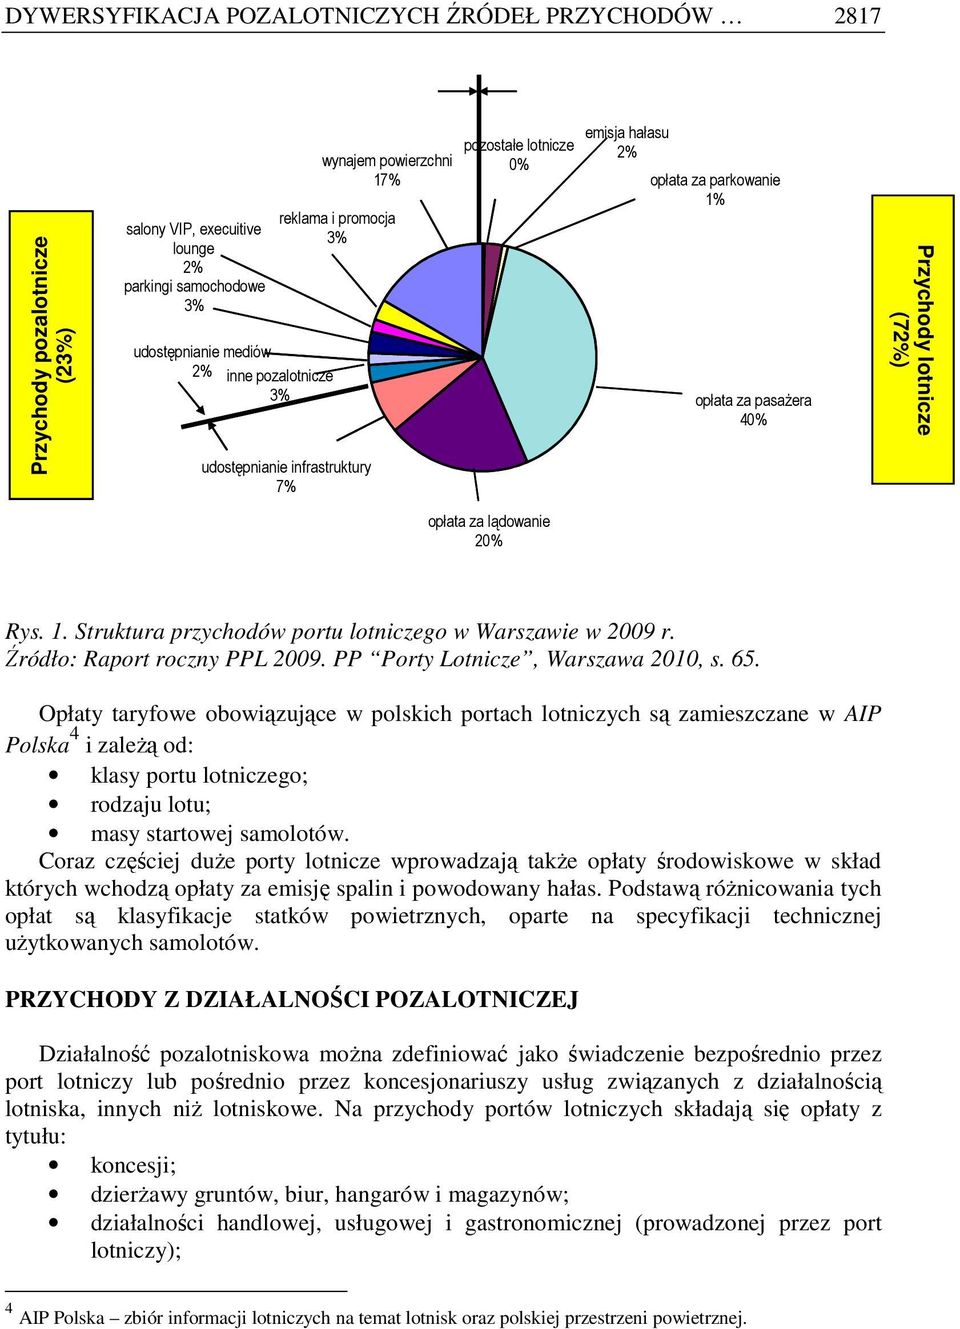 Rys. 1. Struktura przychodów portu lotniczego w Warszawie w 2009 r. Źródło: Raport roczny PPL 2009. PP Porty Lotnicze, Warszawa 2010, s. 65.